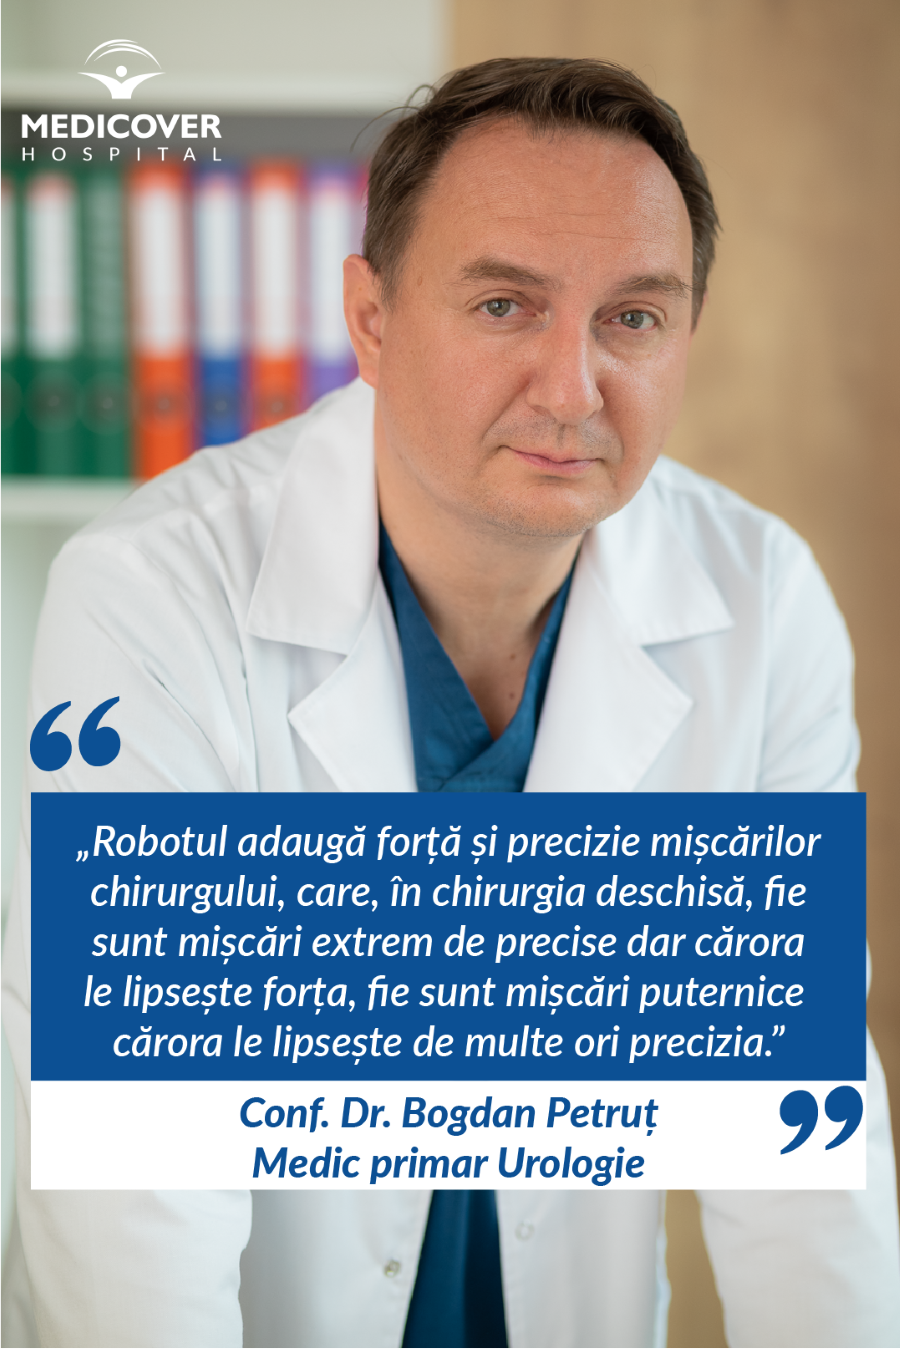 Conf. Dr. Bogdan Petruț, medic primar urologie, Spitalul Medicover Cluj